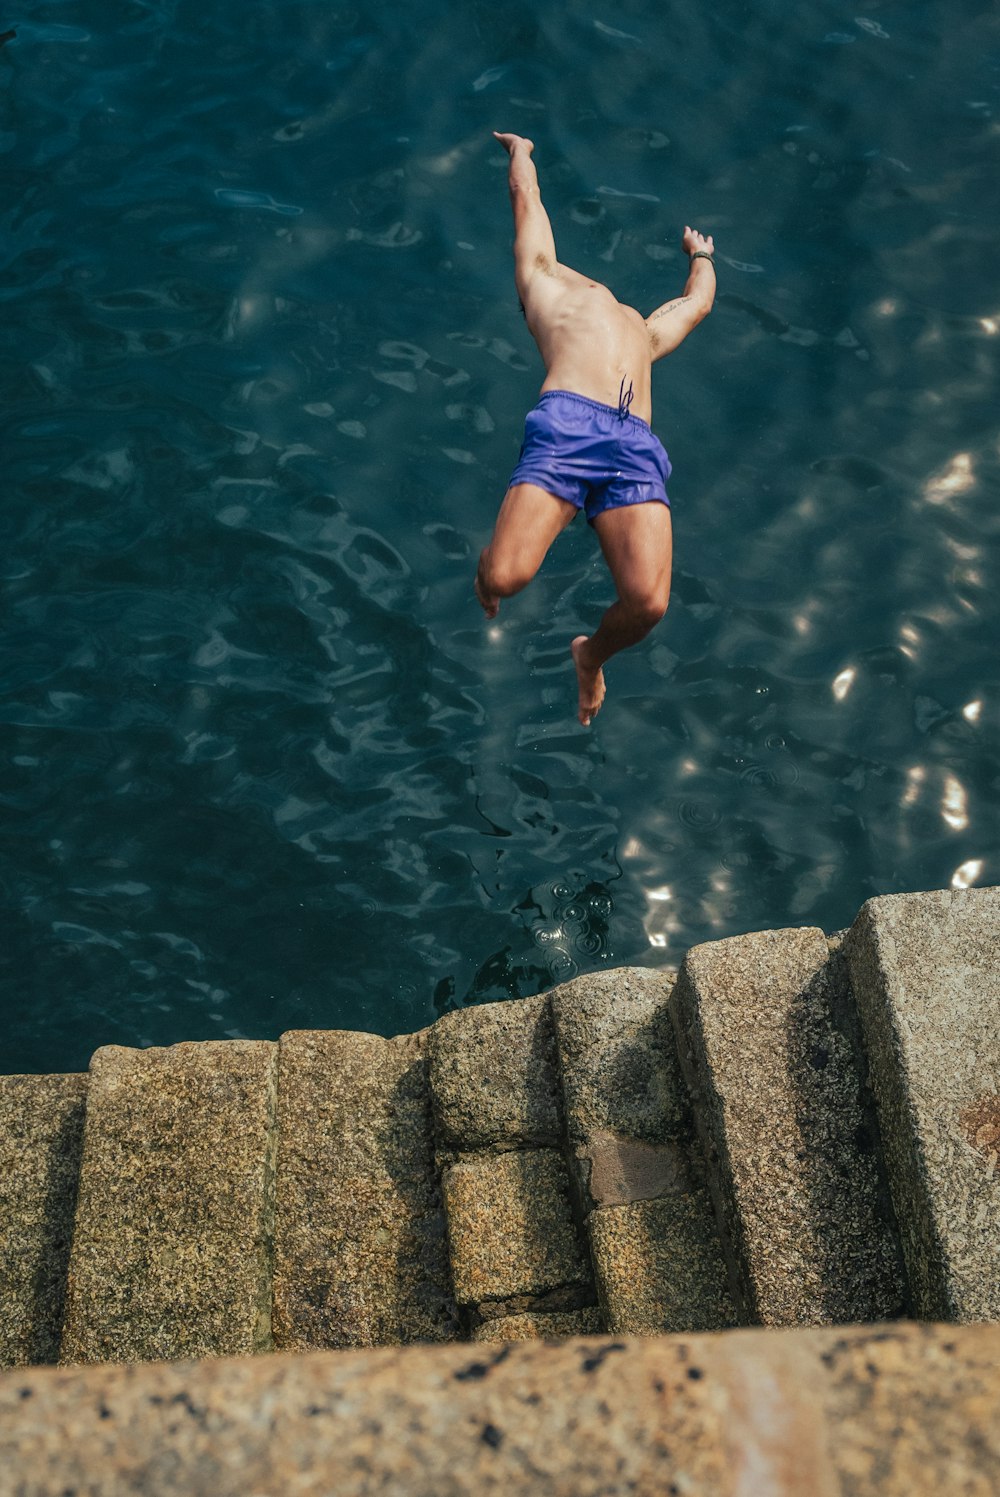 Un homme saute d’un rebord dans un plan d’eau